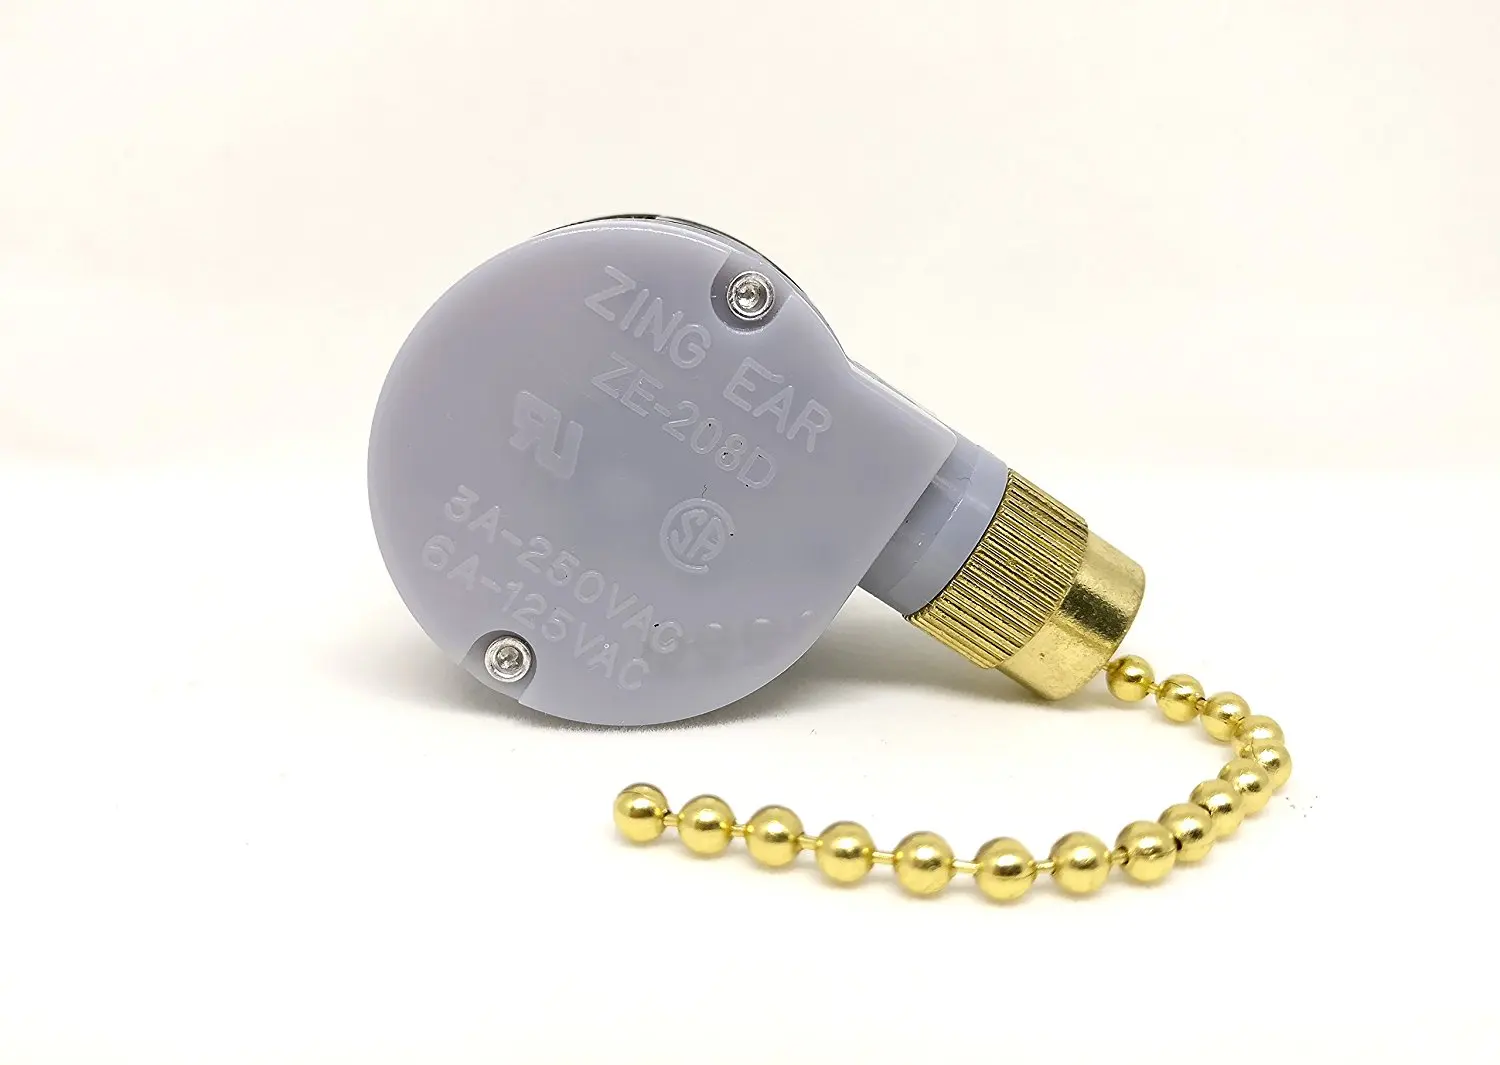 Buy Genuine Zing Ear Ceiling Fan Pull Chain 2 Speed Control